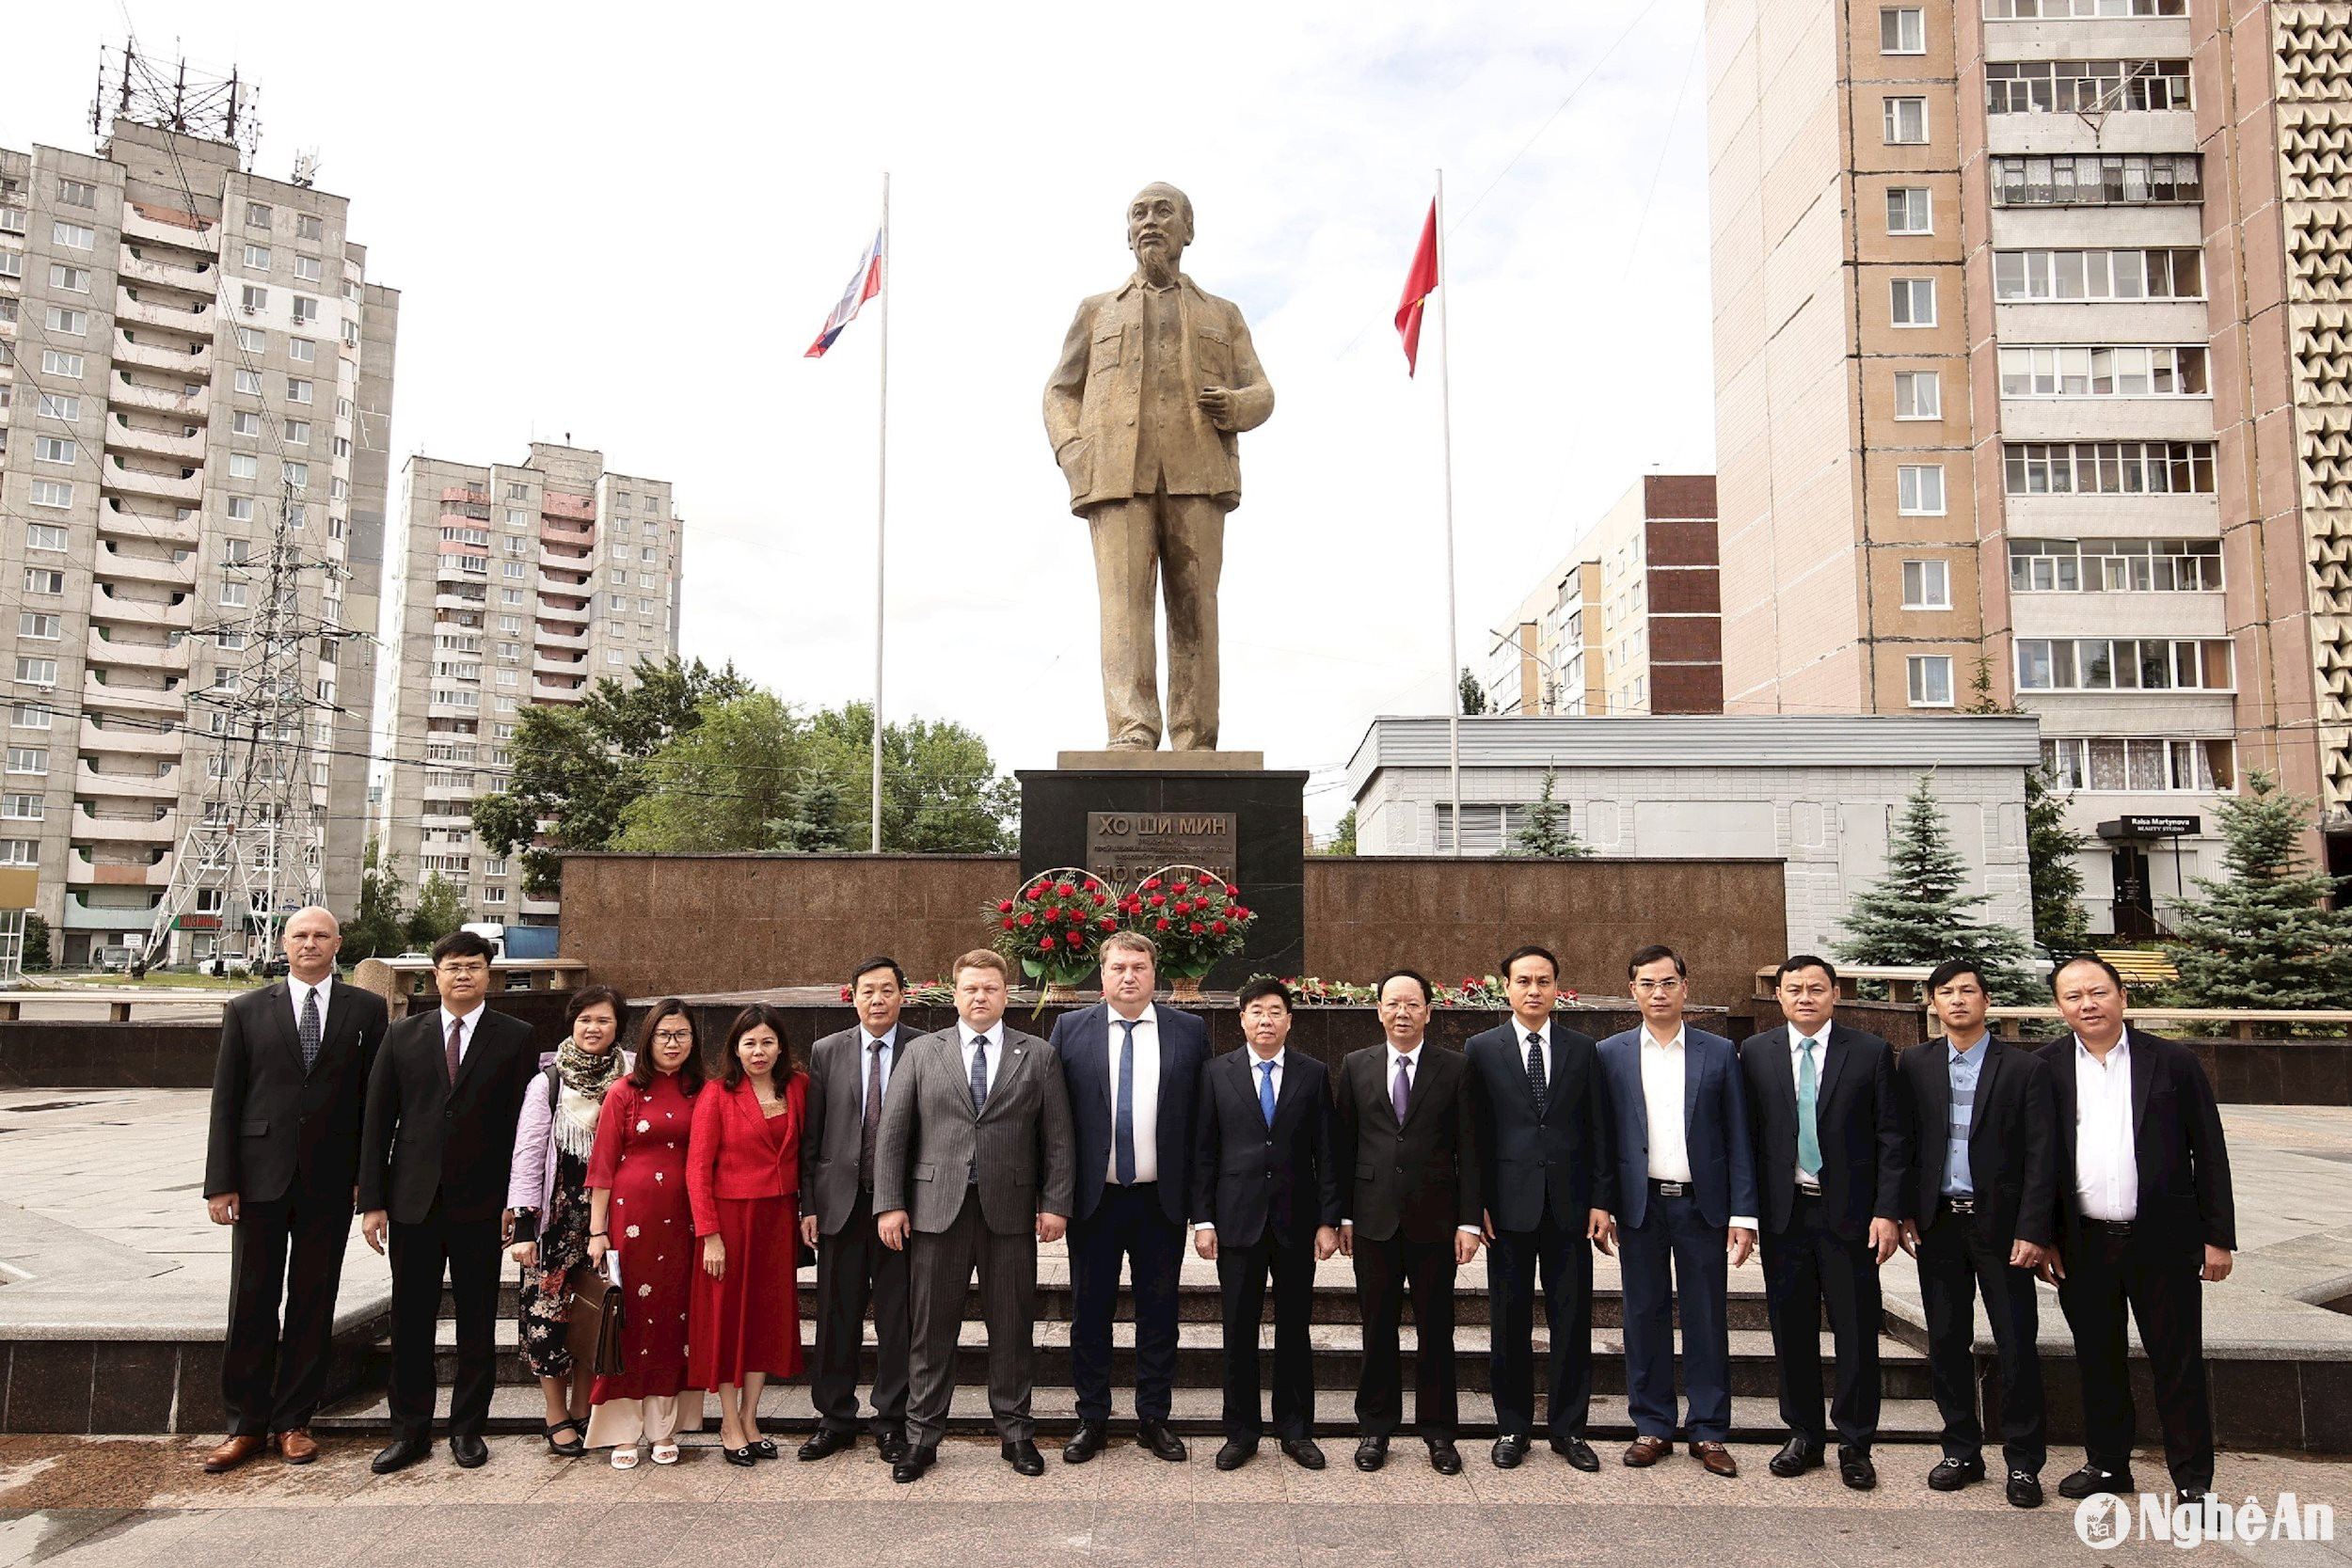 Chụp ảnh lưu niệm tượng đài Chủ tịch Hồ Chí Minh